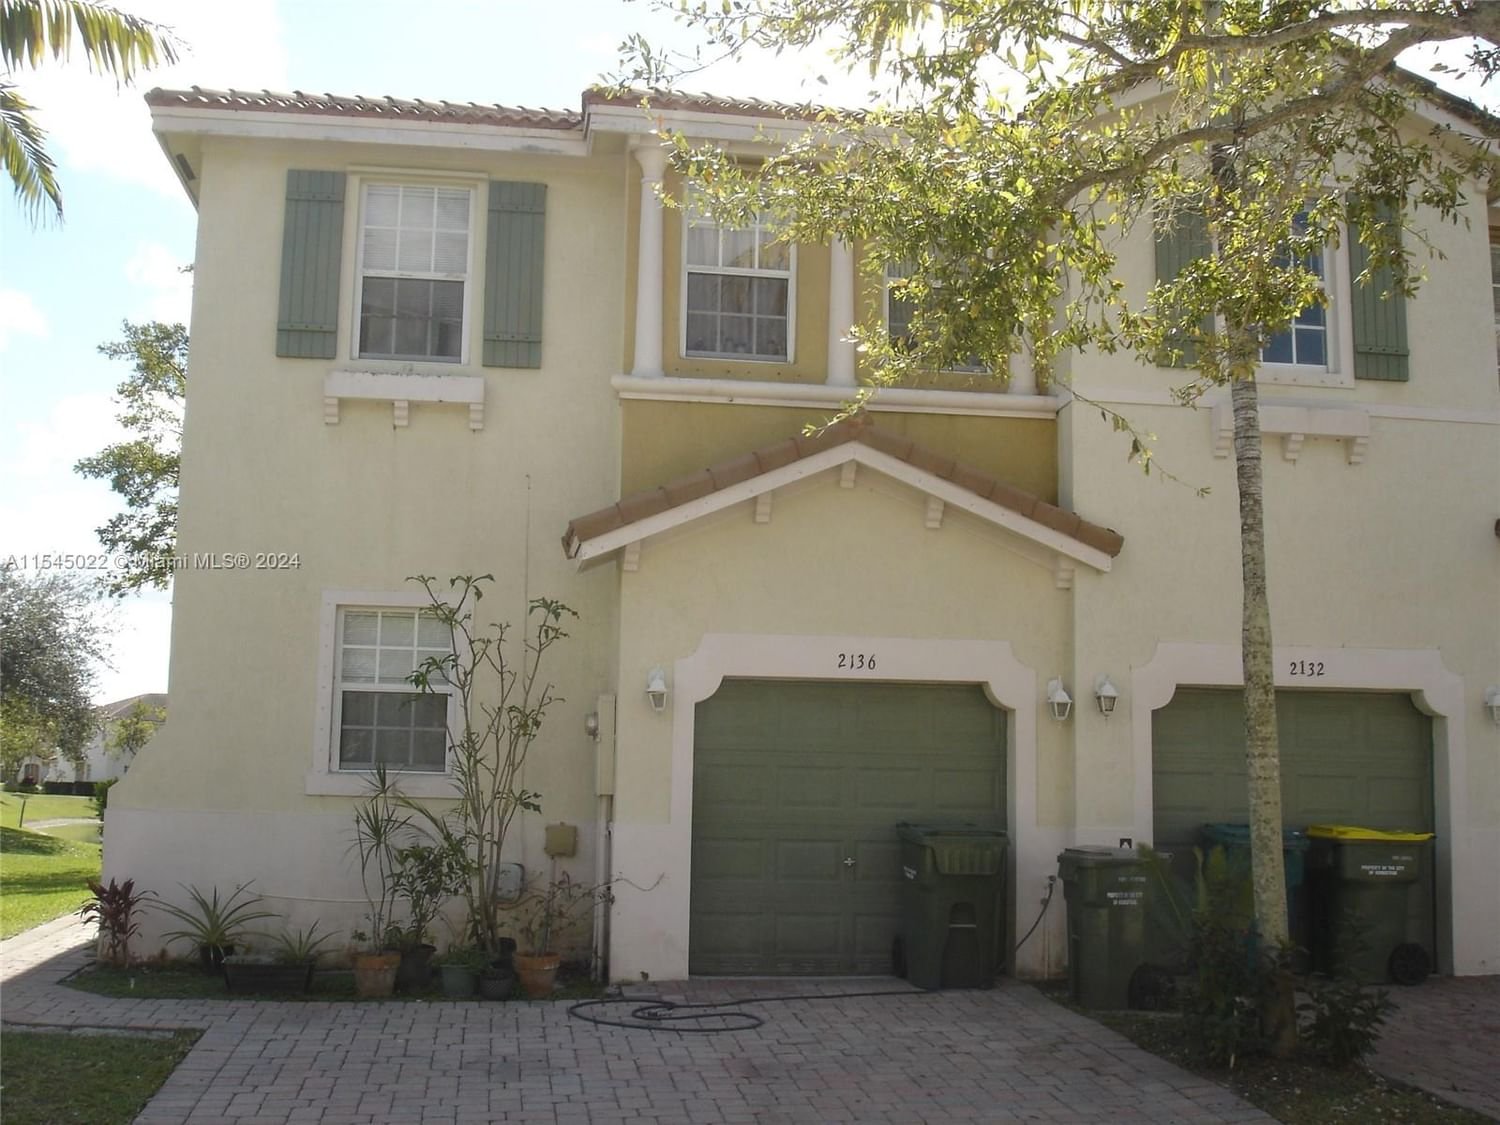 Real estate property located at 2136 6th St, Miami-Dade County, PORTOFINO VILLAS WEST, Homestead, FL